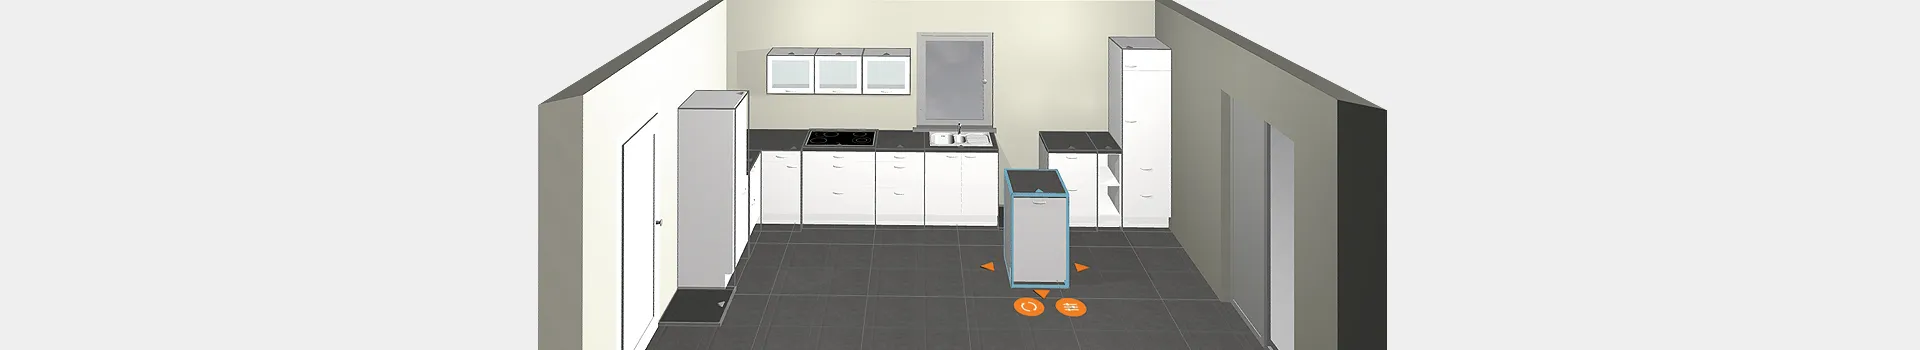 Passez des plans en 3D à votre cuisine de rêve